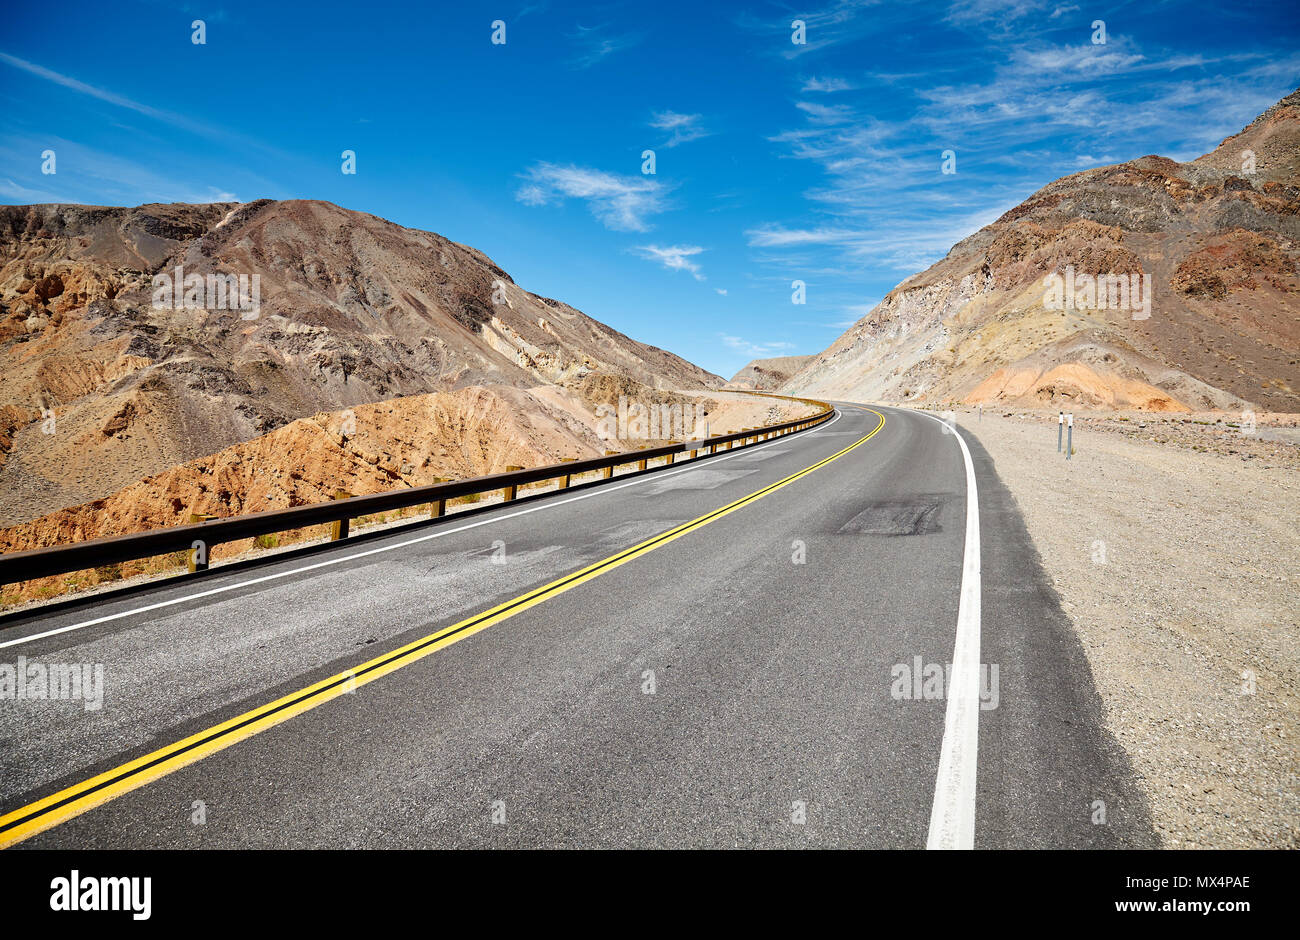 Immagine di una strada nel deserto, il concetto di viaggio. Foto Stock